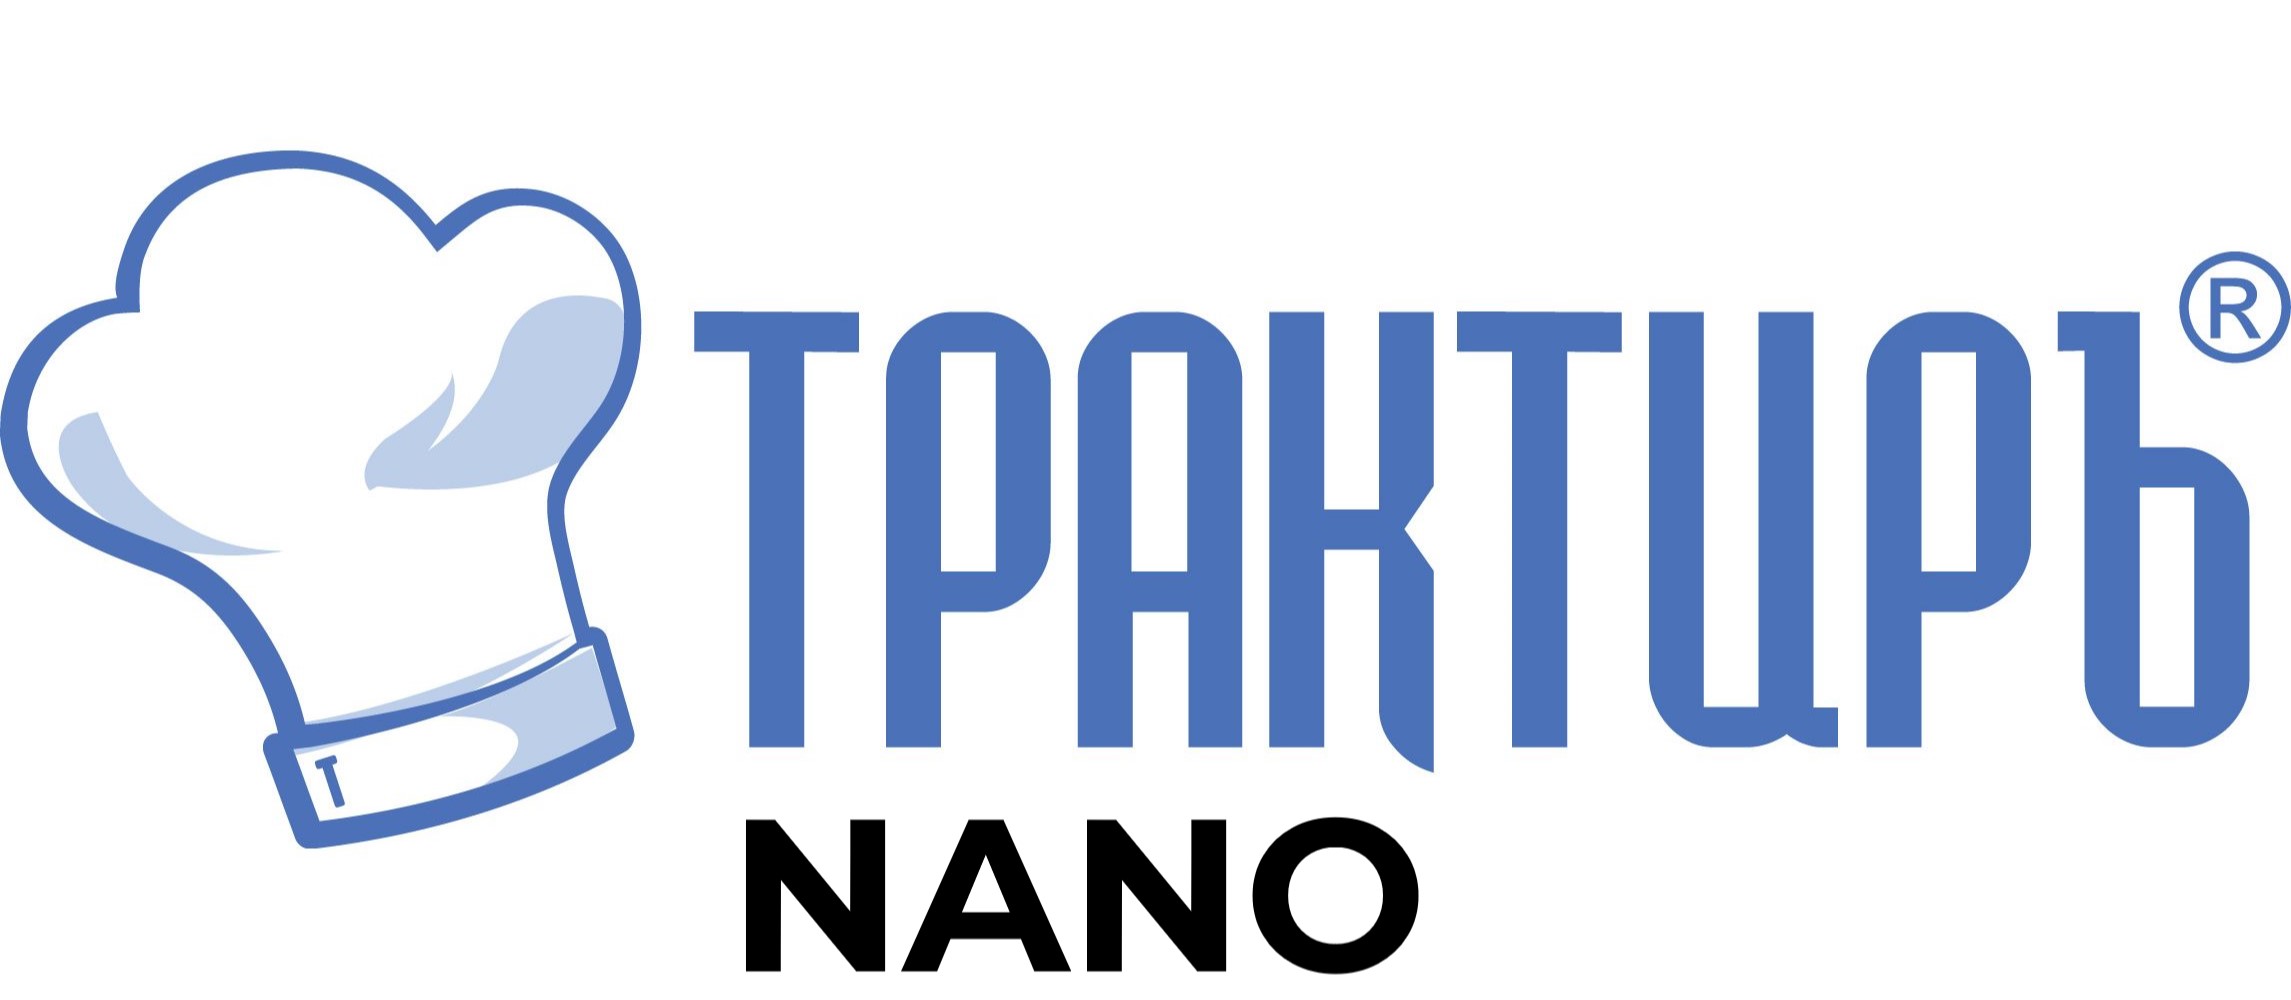 Конфигурация Трактиръ: Nano (Основная поставка) в Красноярске